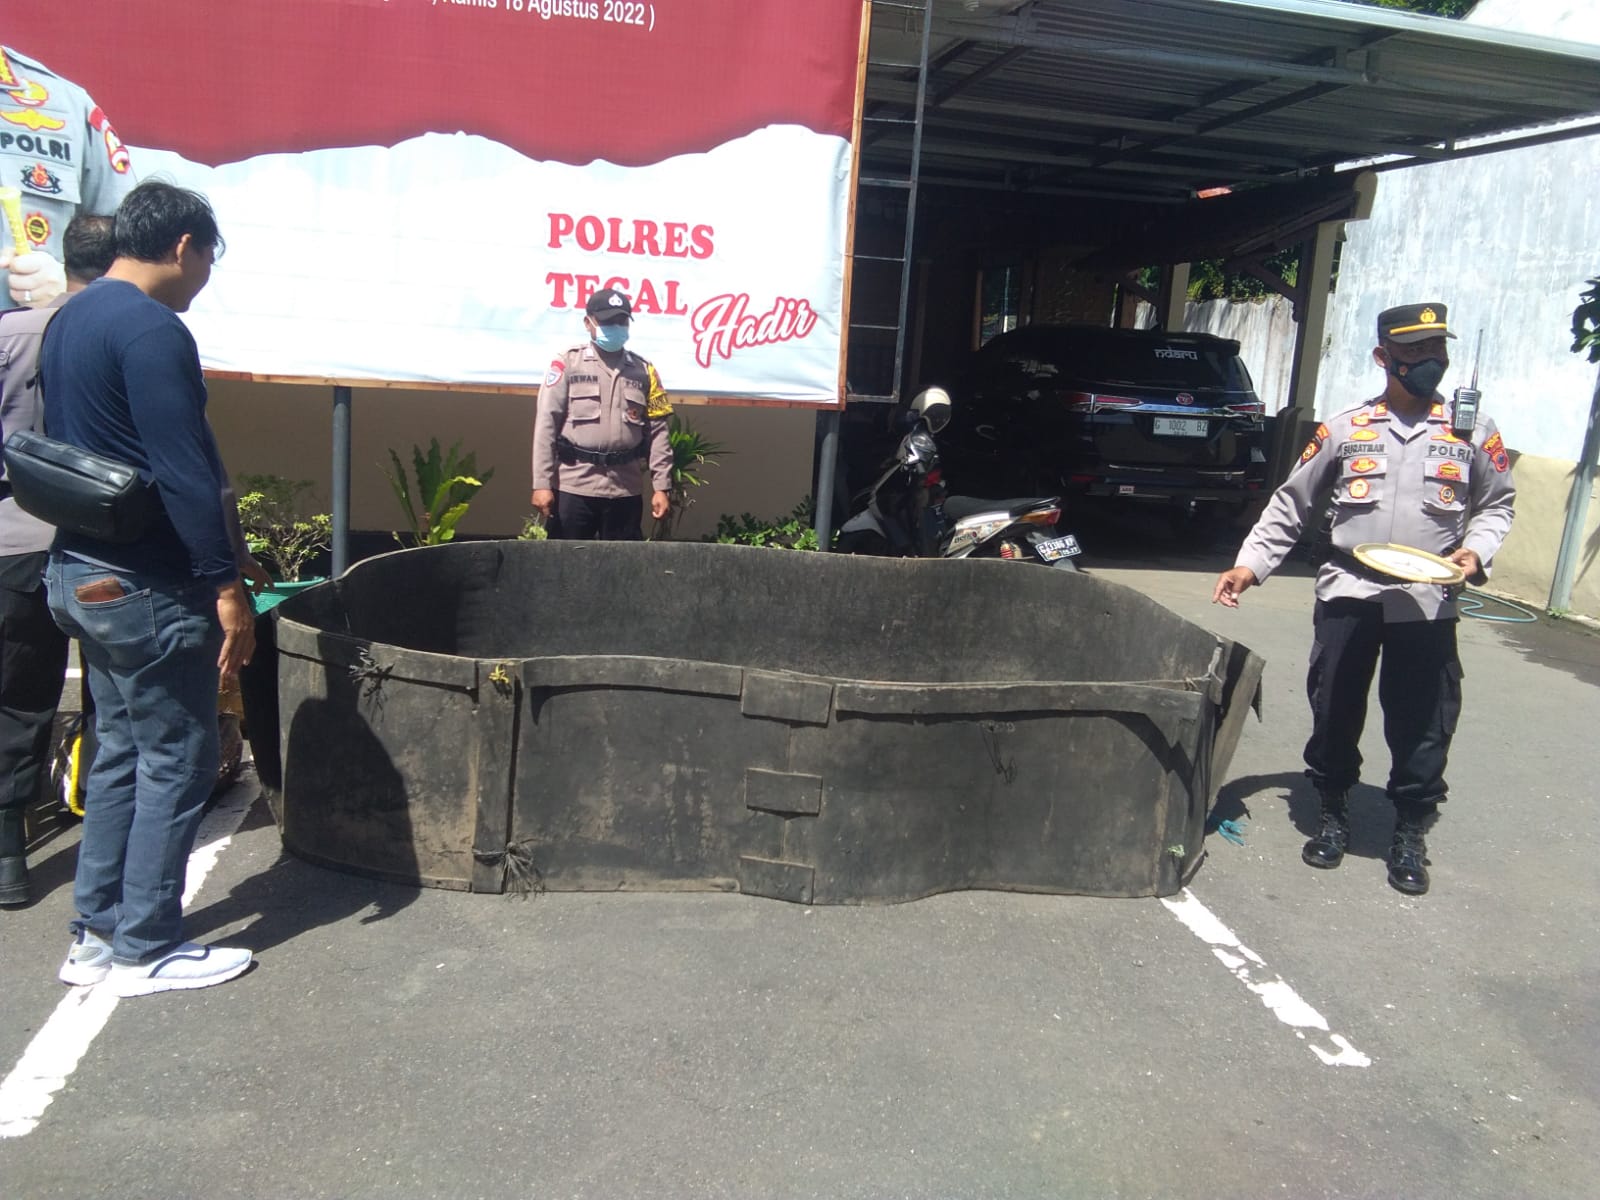 Grebek Tempat Judi Sabung Ayam di Kalisapu Tegal, Polisi Amankan 3 Ekor Jago dan Satu Jam Dinding